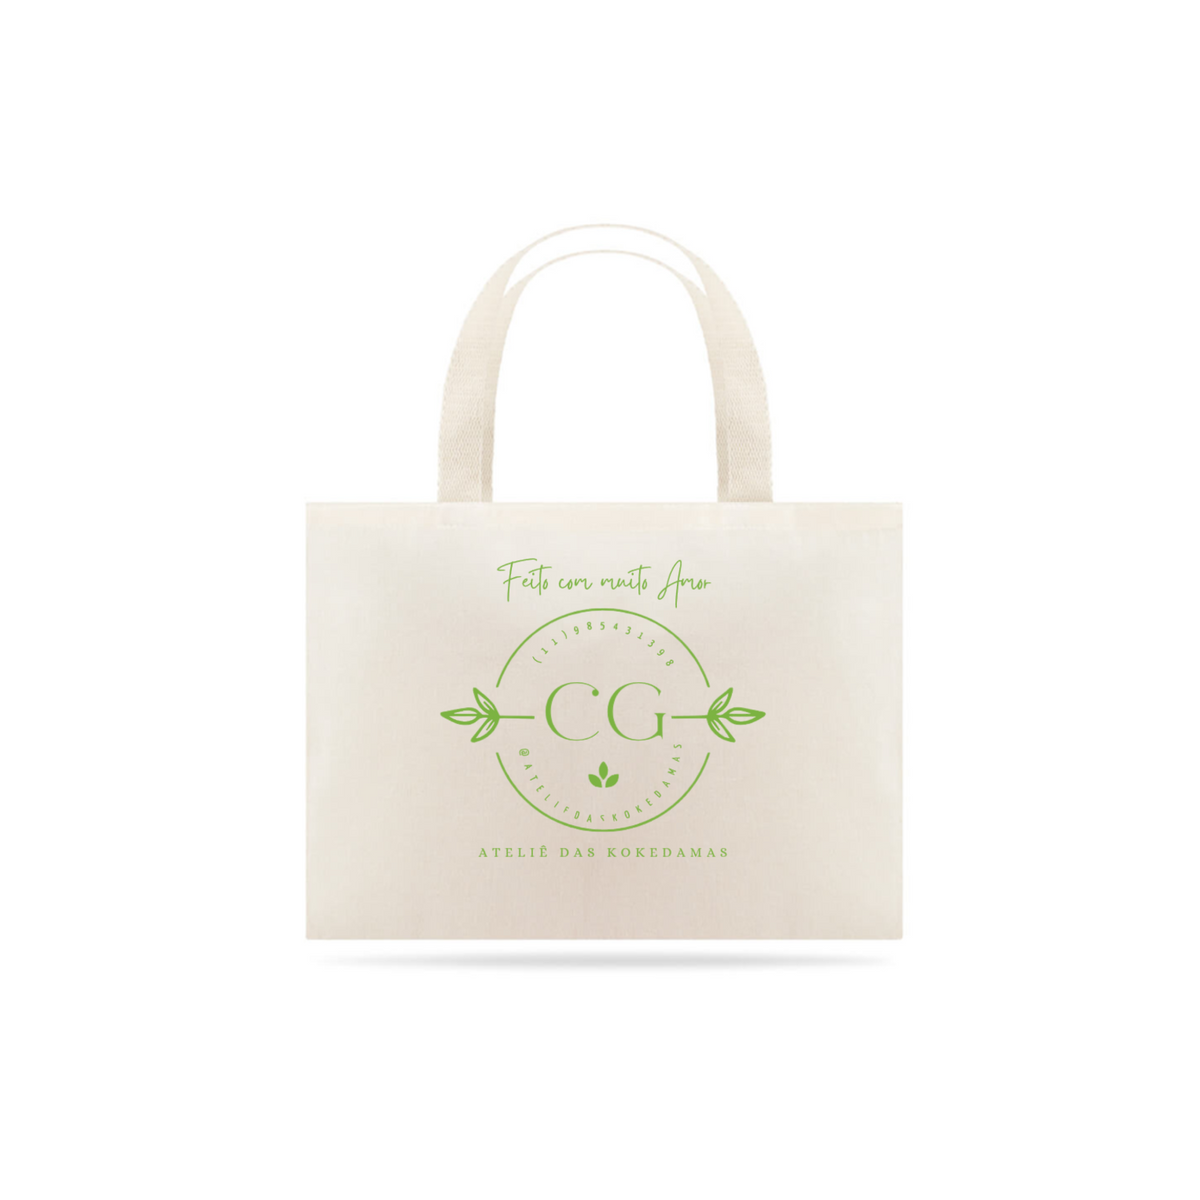 Nome do produto: Eco Bag - Ateliê das Kokedamas